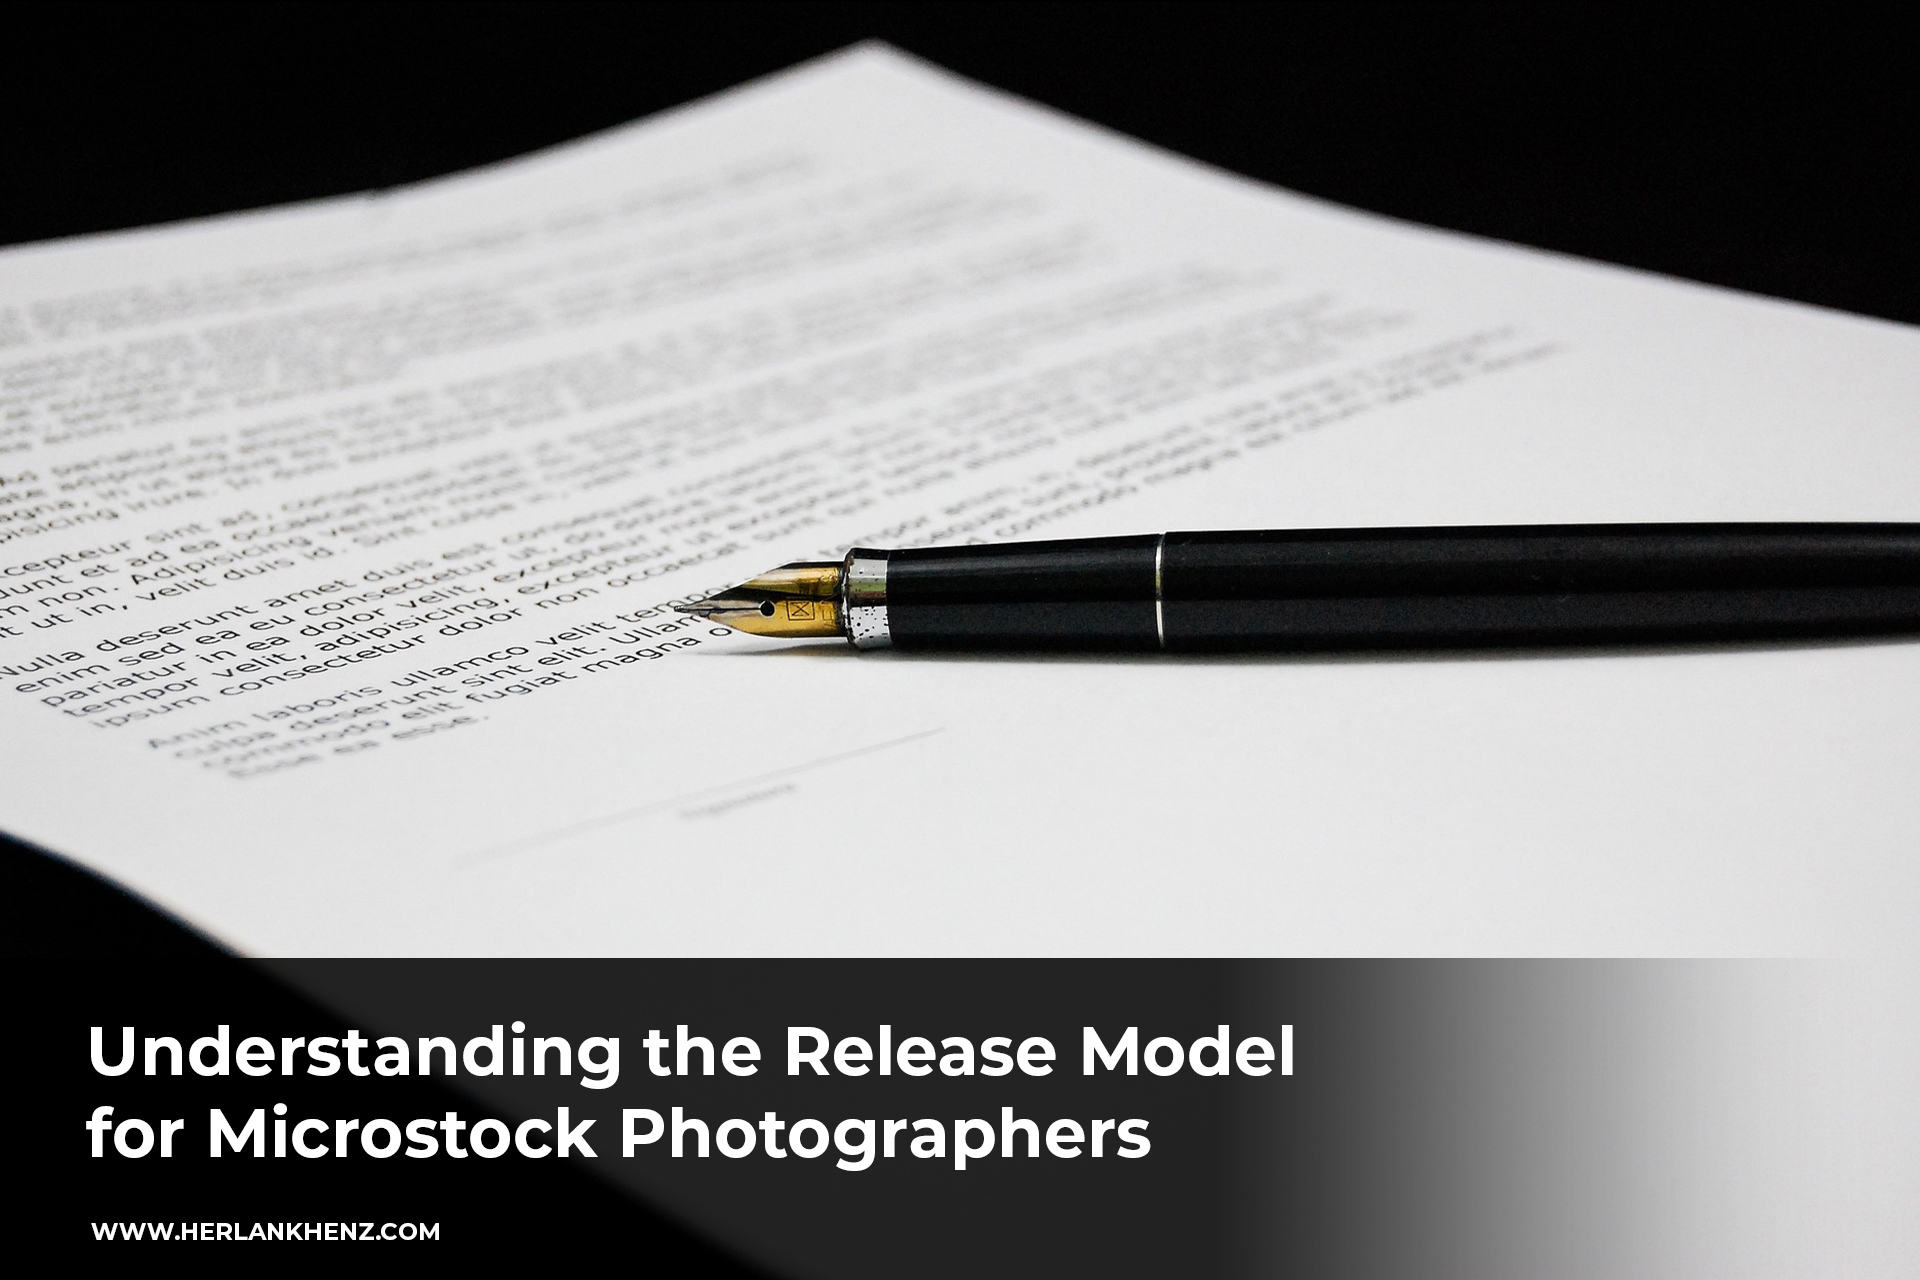 Comprendere il modello di rilascio per i fotografi Microstock